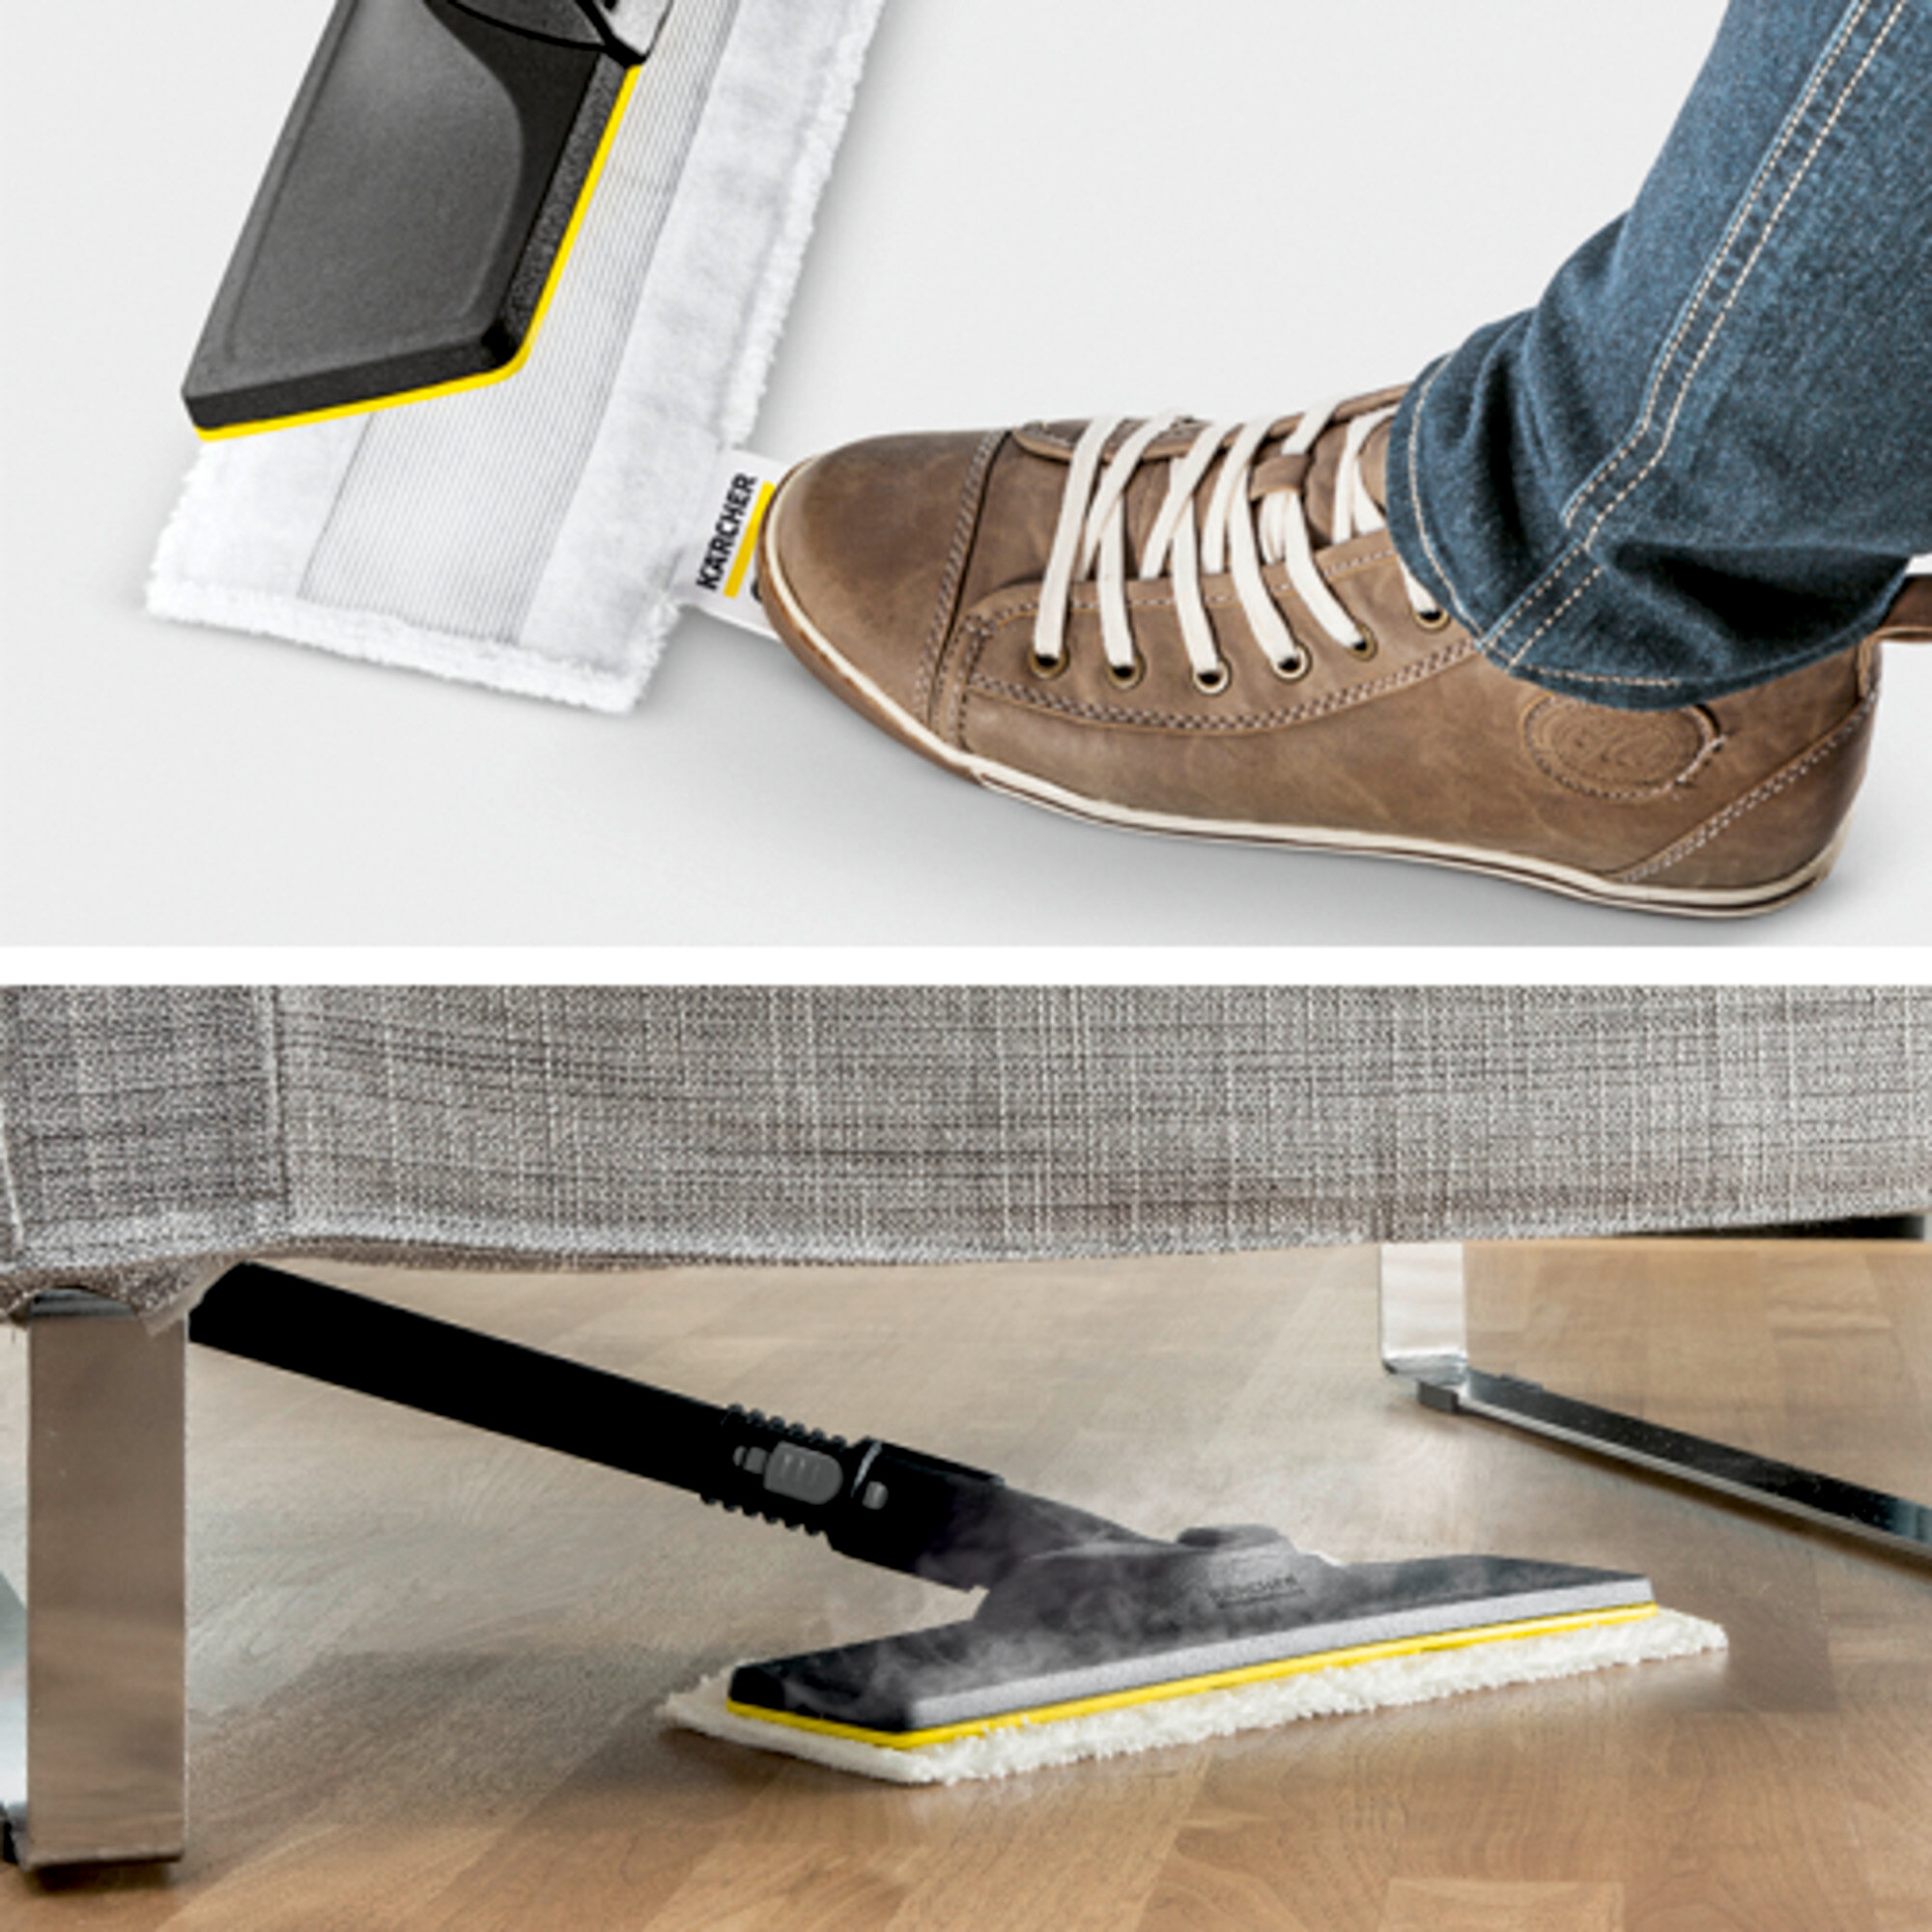 Parný čistič Parný čistič SC 2 EasyFix Premium: Súprava na čistenie podlahy EasyFix s flexibilným kĺbom na podlahovej hubici a pohodlným suchým zipsom na upevnenie utierky na podlahu